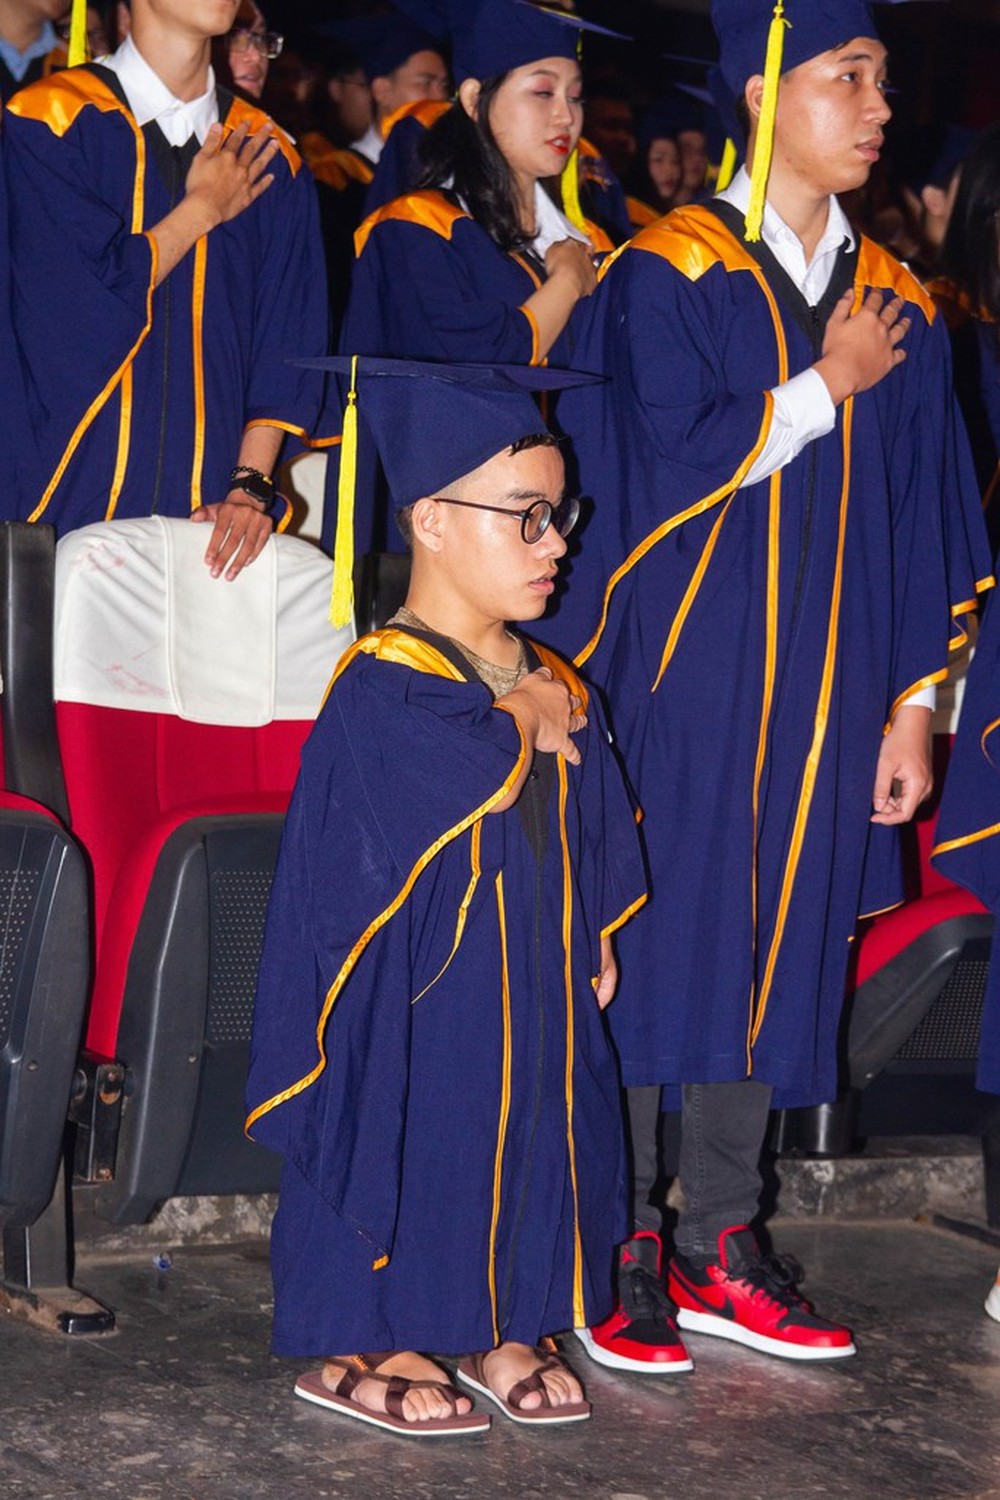 Xúc động hình ảnh hiệu trưởng quỳ gối trao bằng tốt nghiệp cho sinh viên đặc biệt - Ảnh 2.